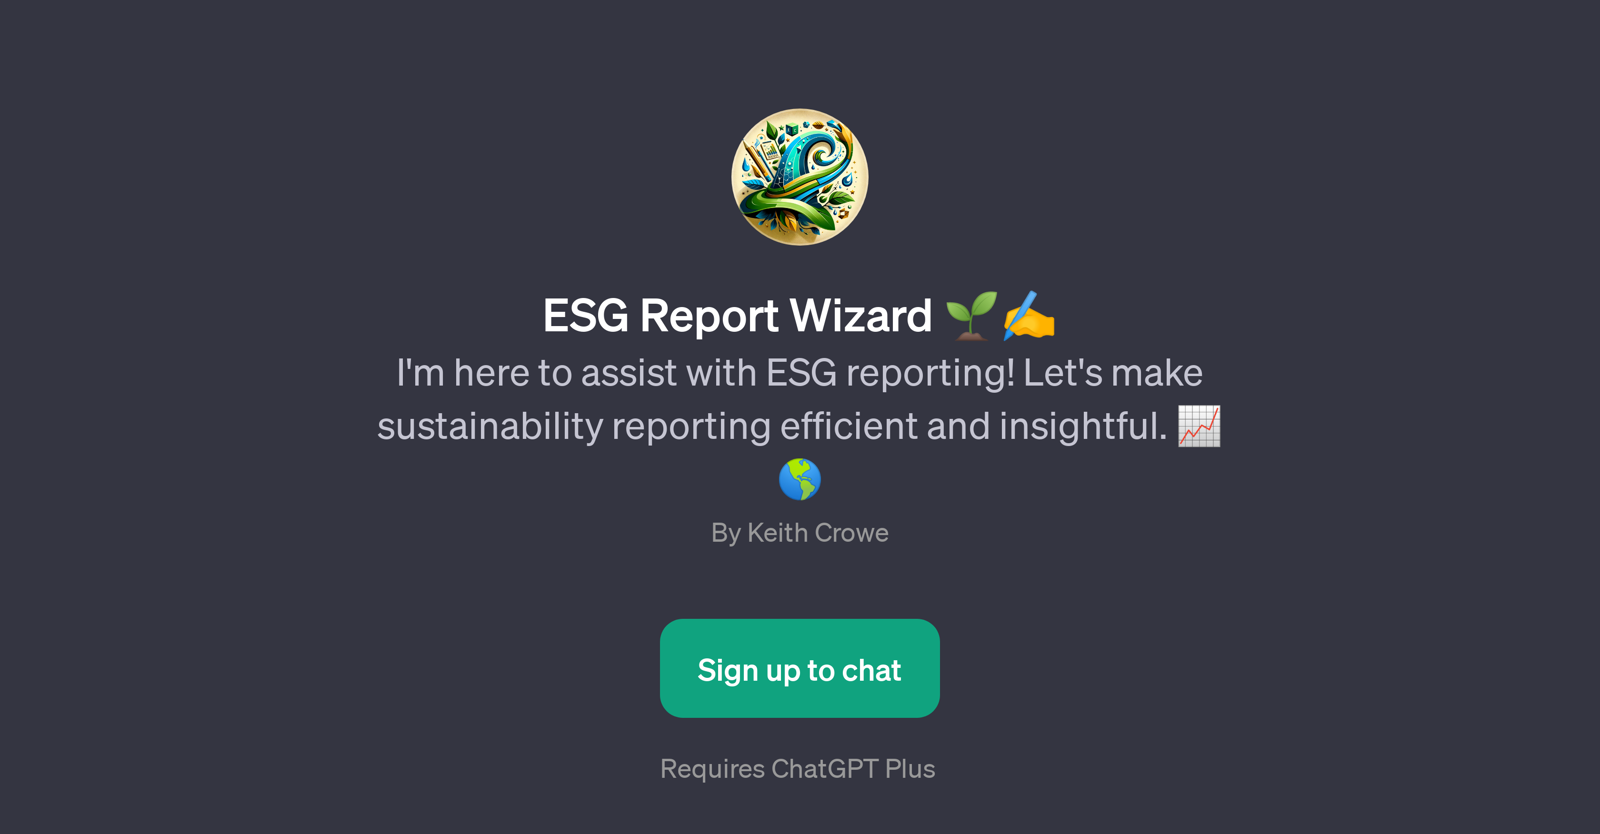 ESG Report Wizard website